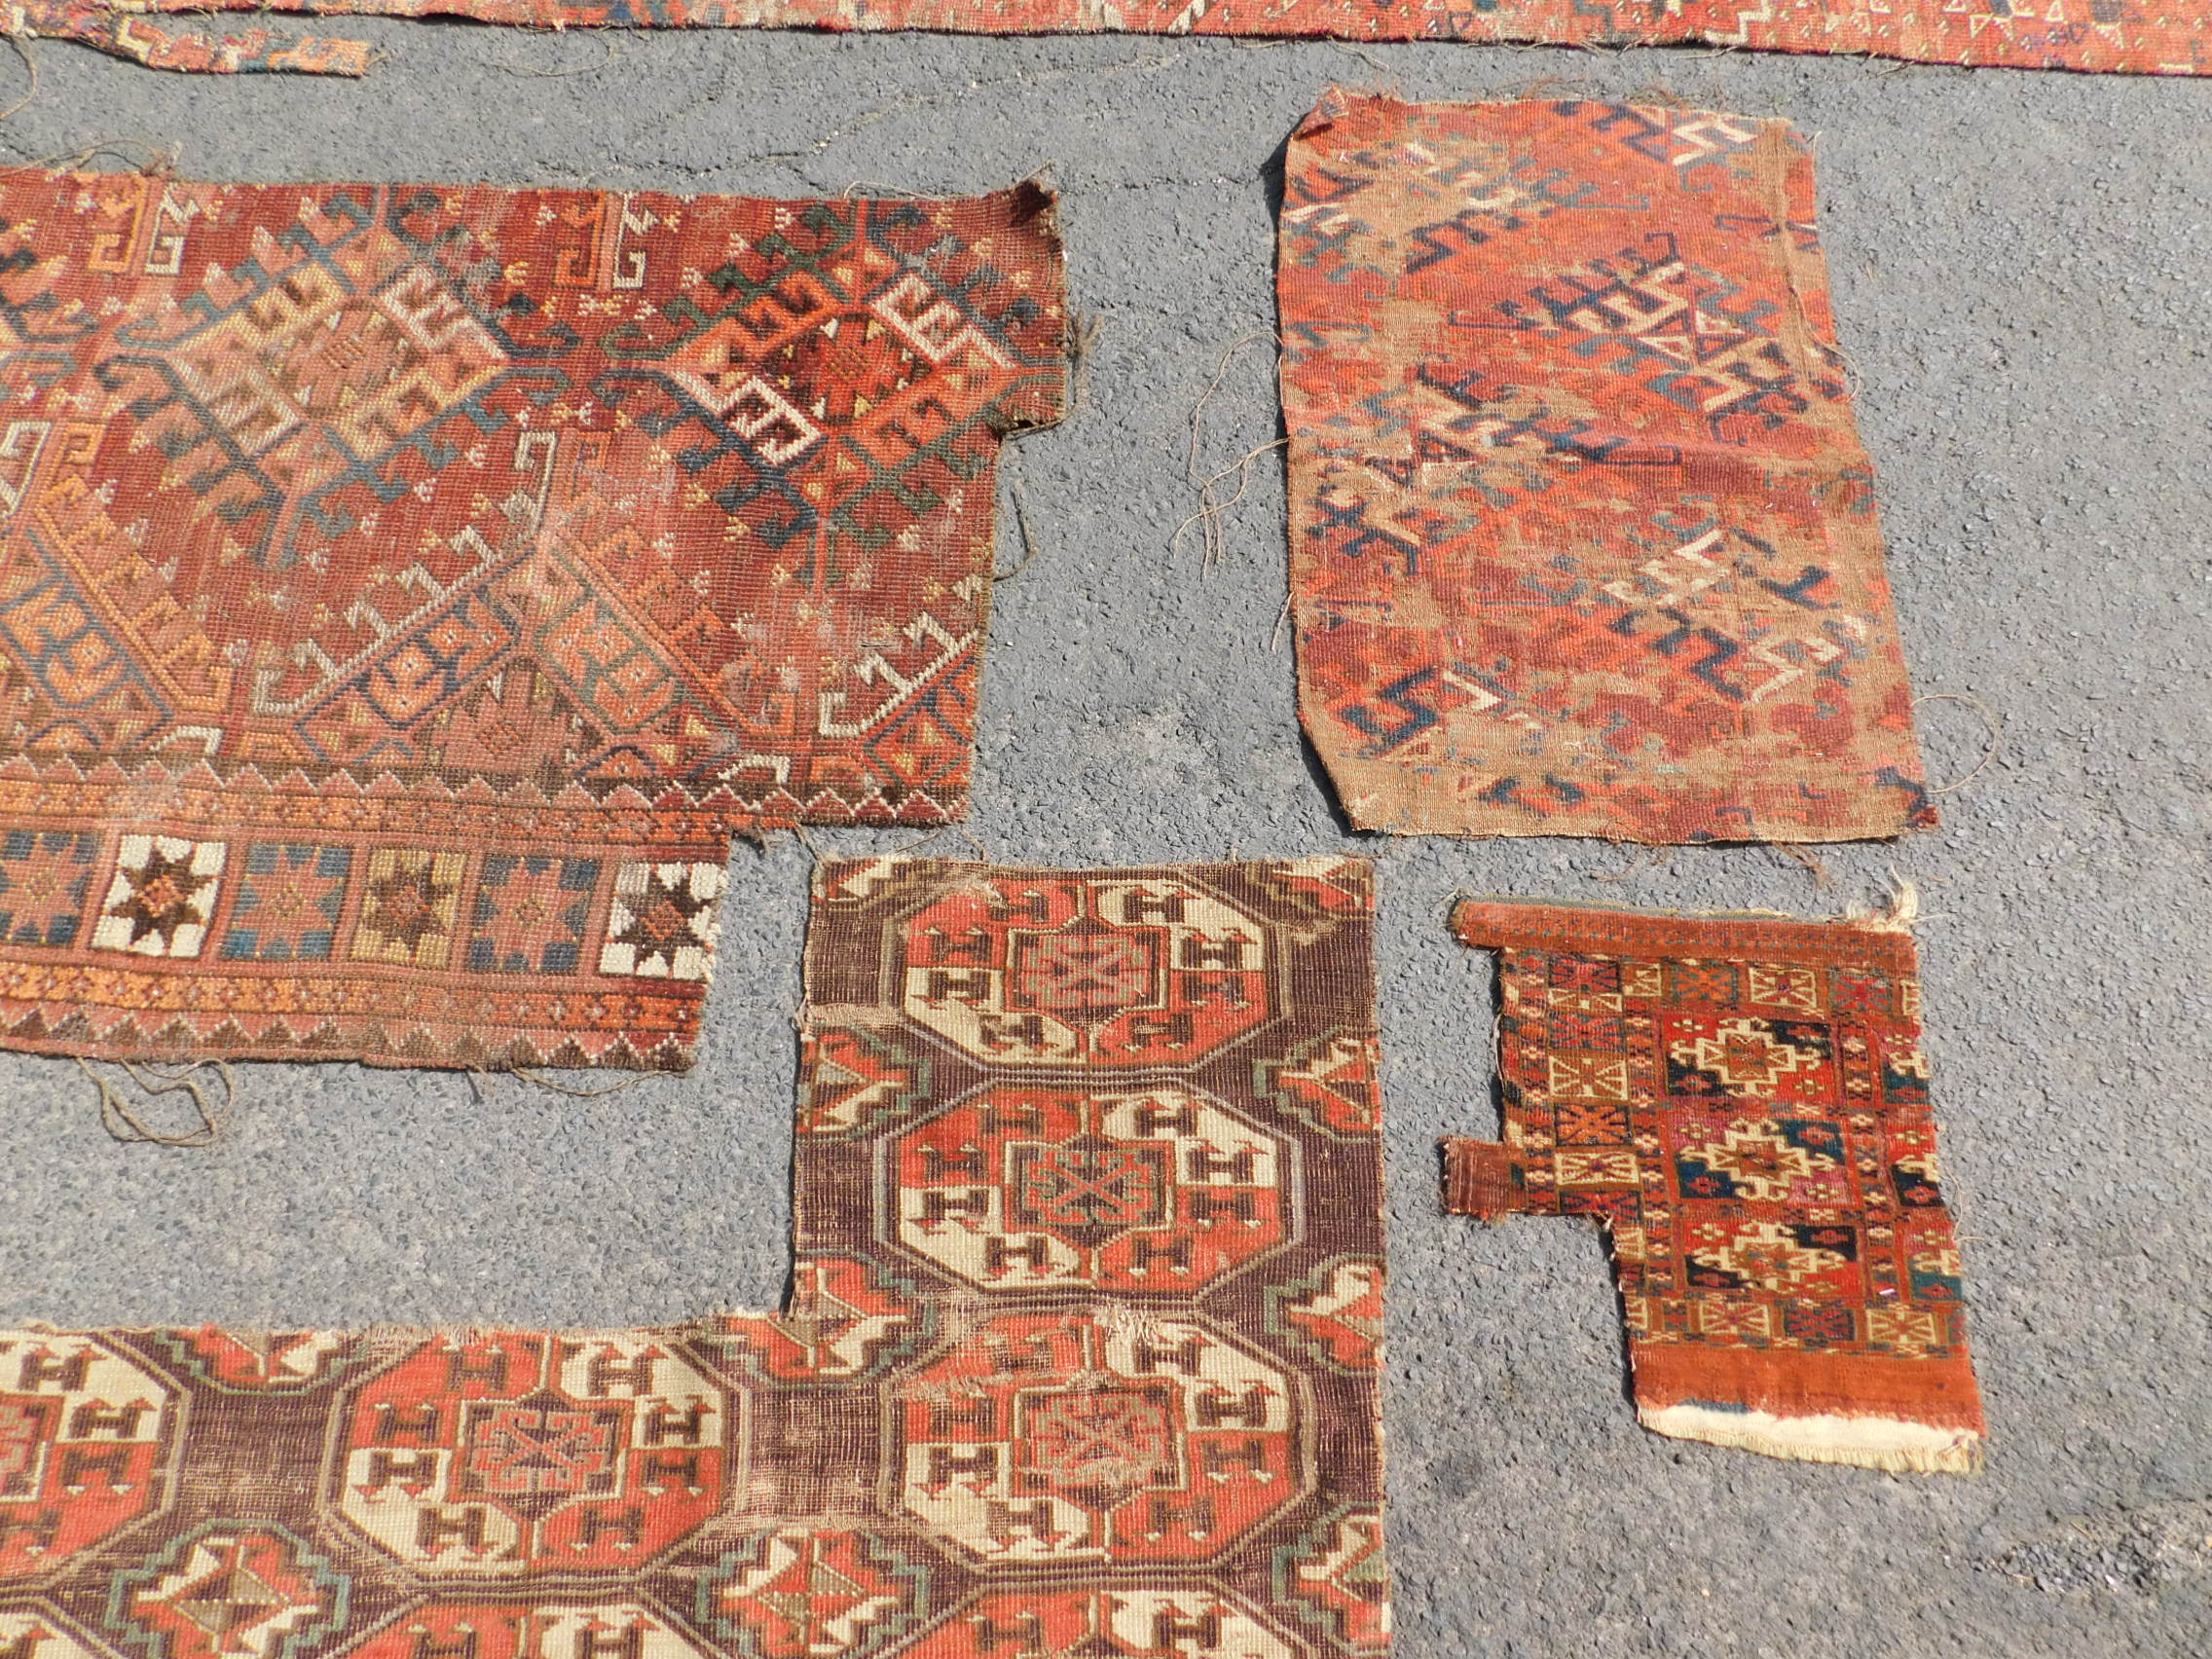 Studiensammlung. 5 Turkmenen Stammesteppich Fragmente. Antik. - Image 3 of 5